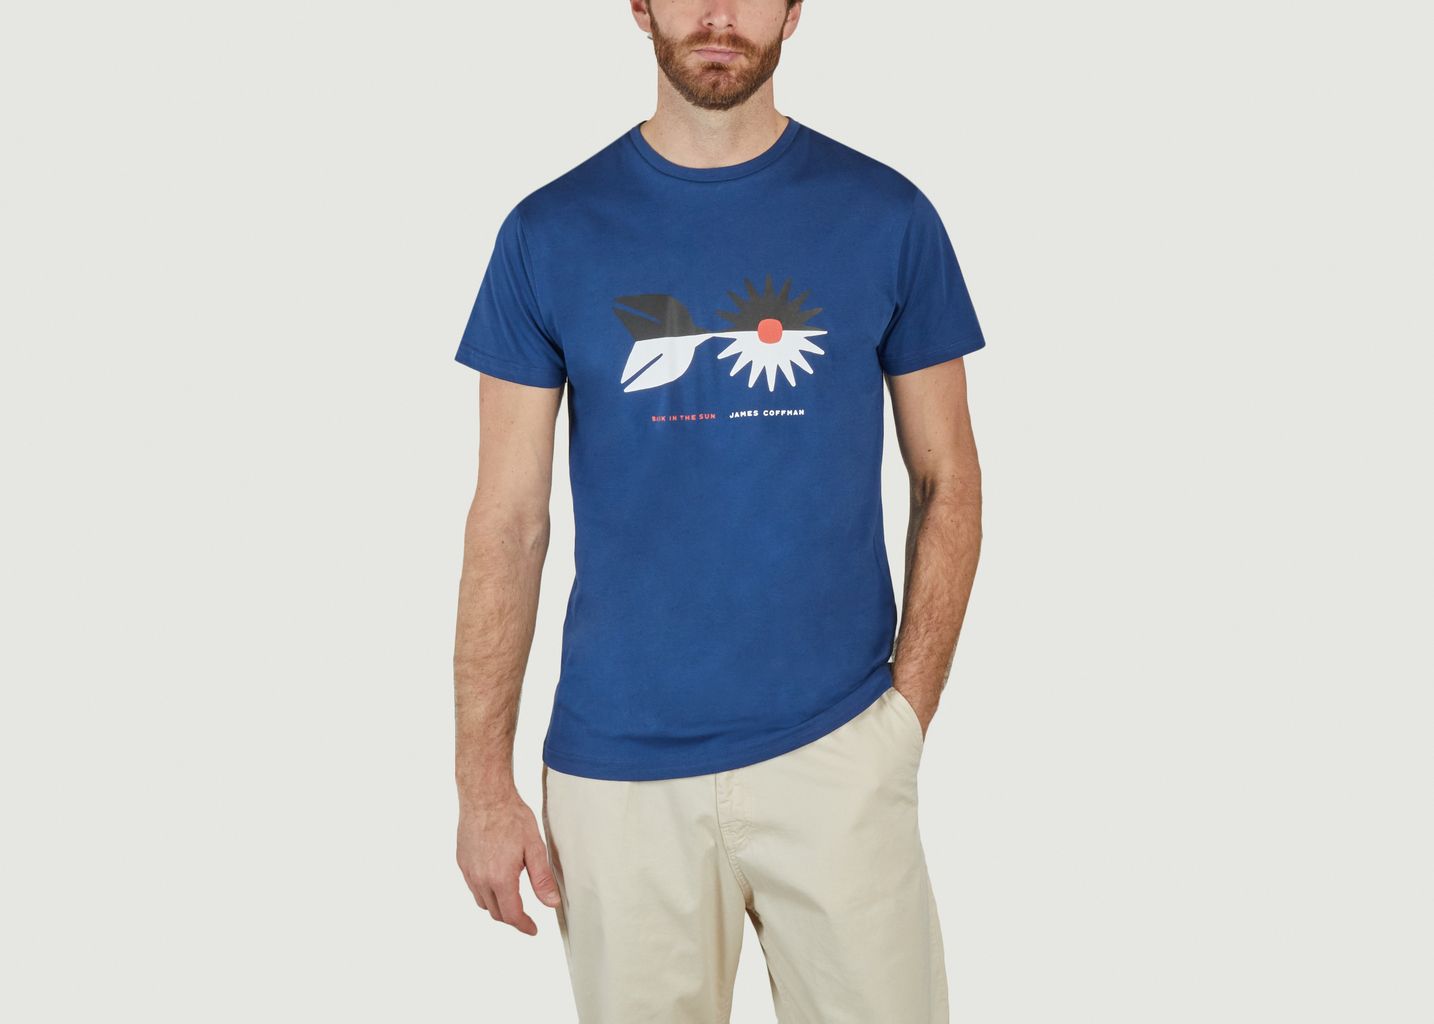 Chasing Sun Sweat T-shirt - Bask in the Sun